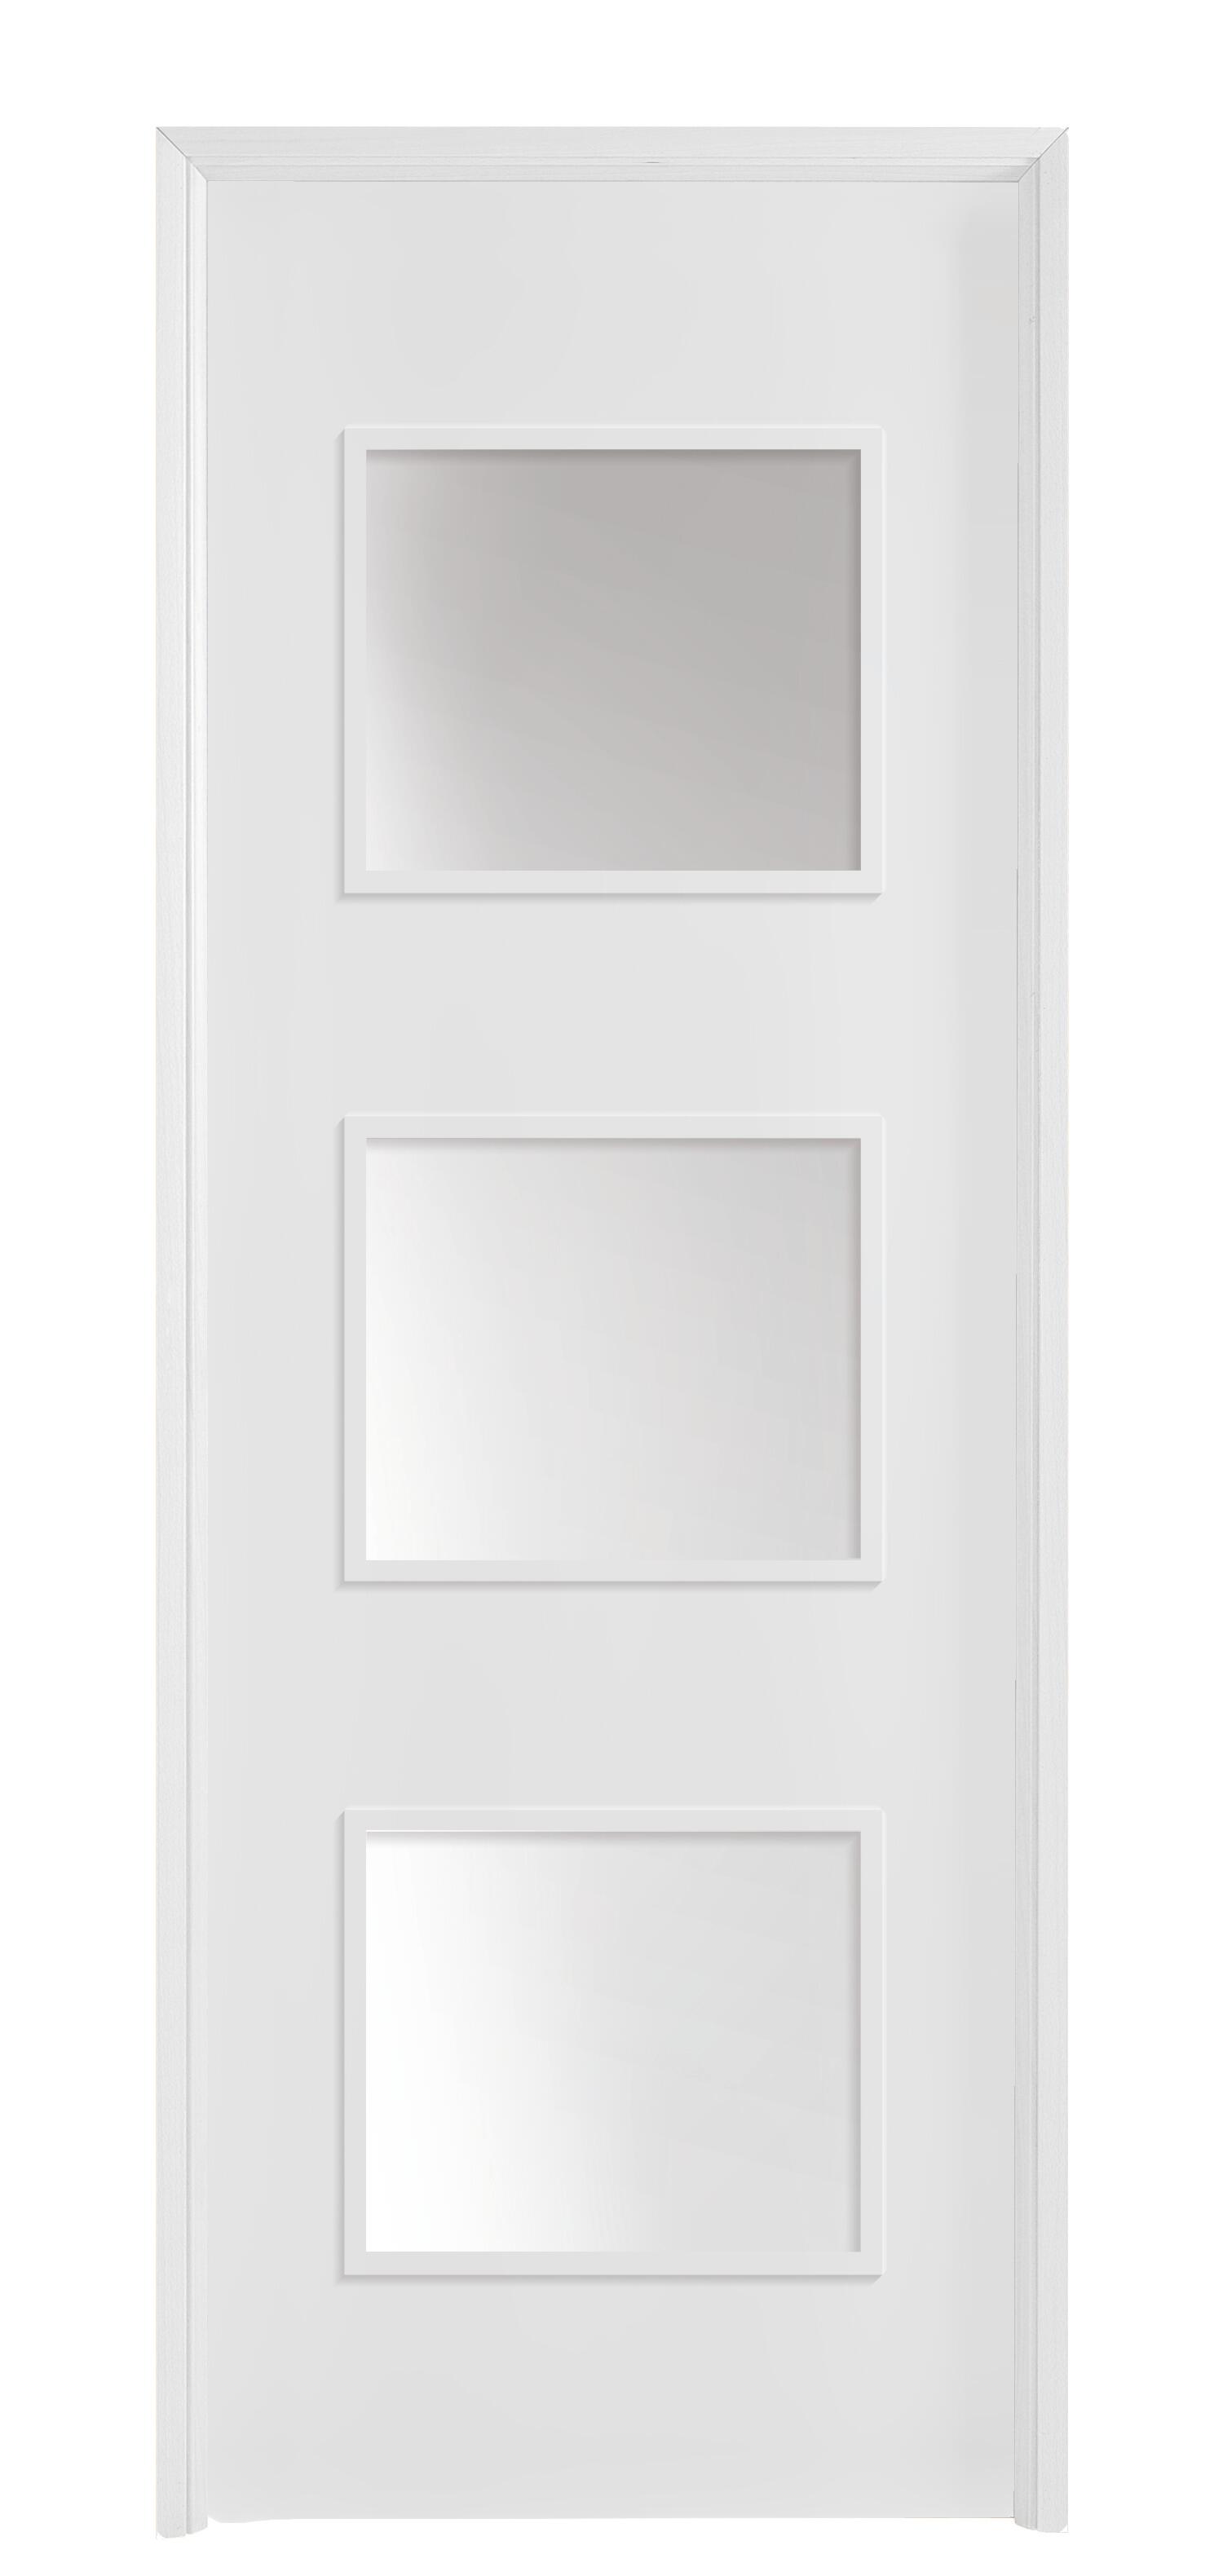 Puerta con cristal bari plus blanca 6x2x72,5 cm i